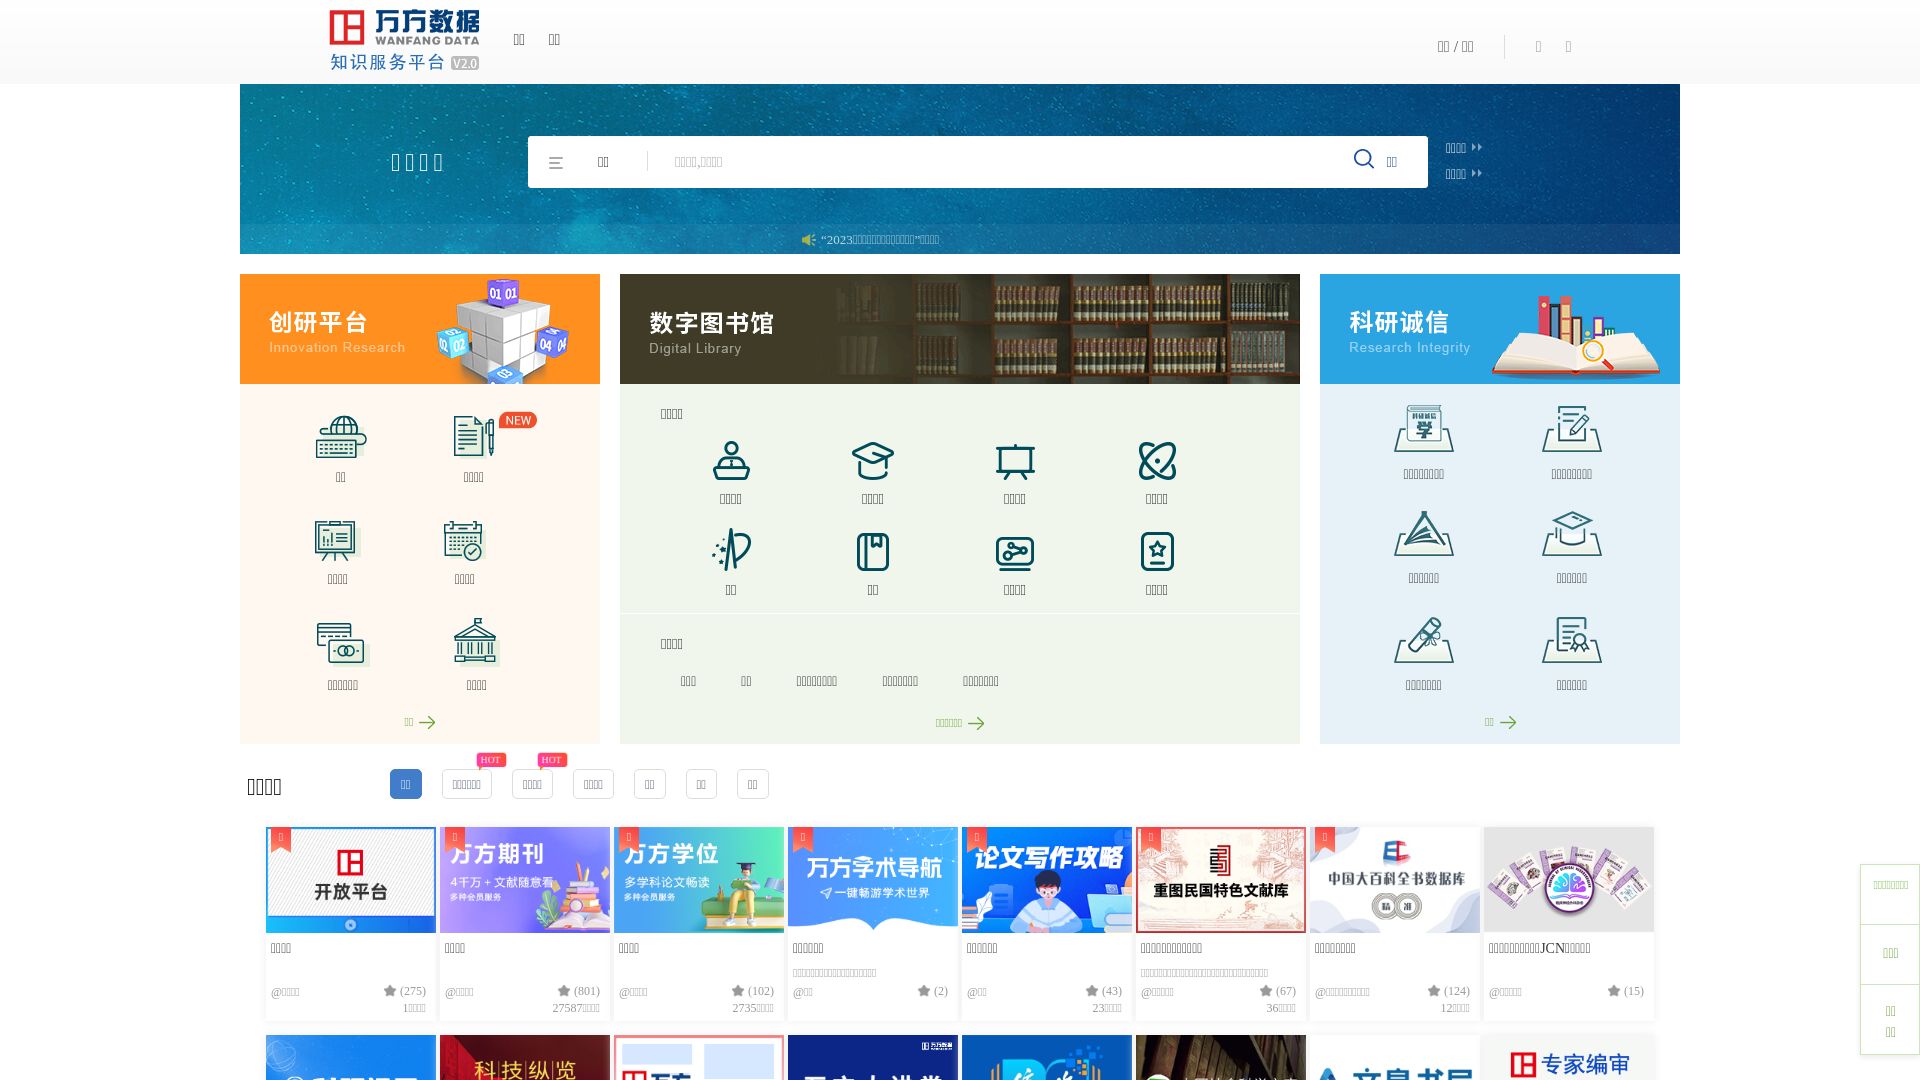 вебсайт wanfangdata.com.cn Є   ONLINE